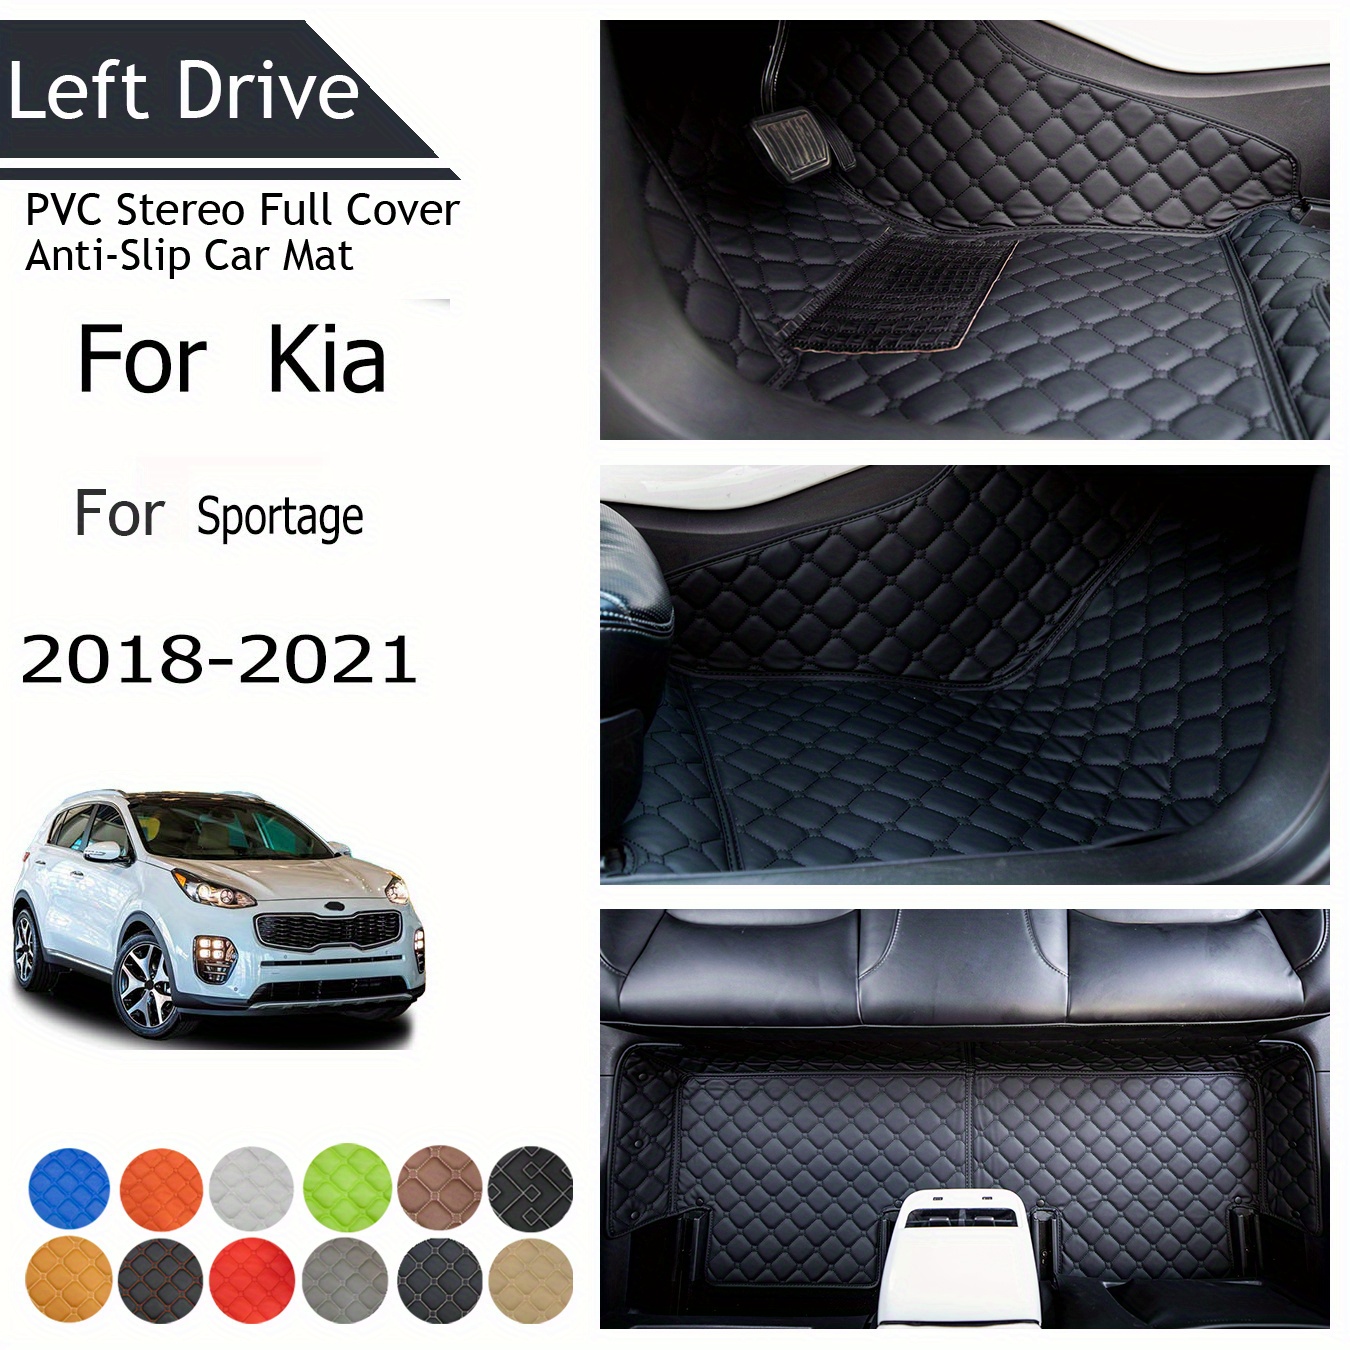 Tapis de sol de voiture pour Kia Sportage NQ5, tapis de sol pour